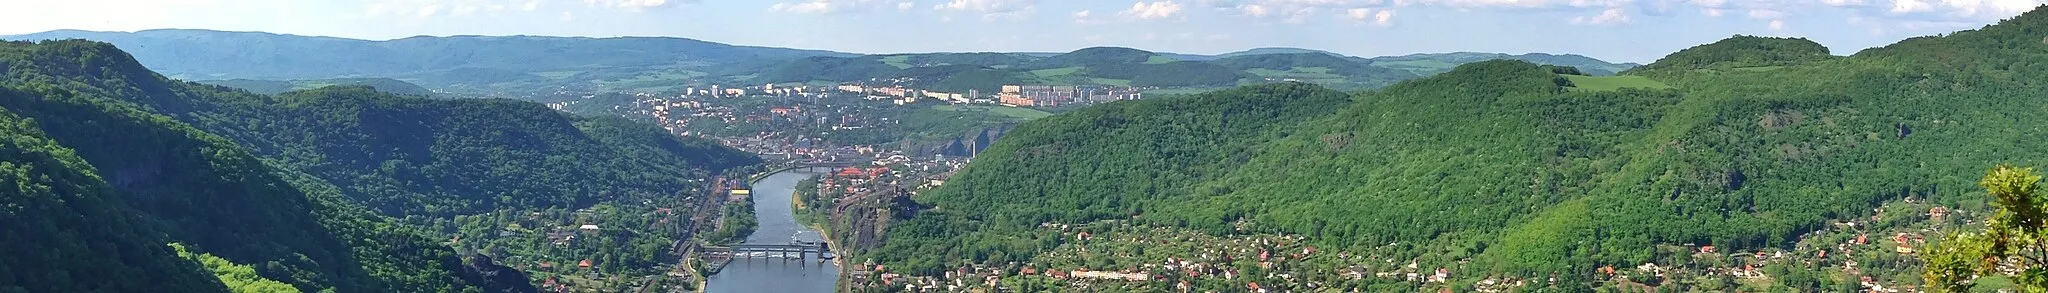 Photo showing: Pohled na labské údolí a Ústí nad Labem z vyhlídky Skály (448 m n. m.) nad Vaňovem. V údolí je patrný Vaňov, část Střekova, hrad Střekov, Masarykova zdymadla a NPP Vrkoč.